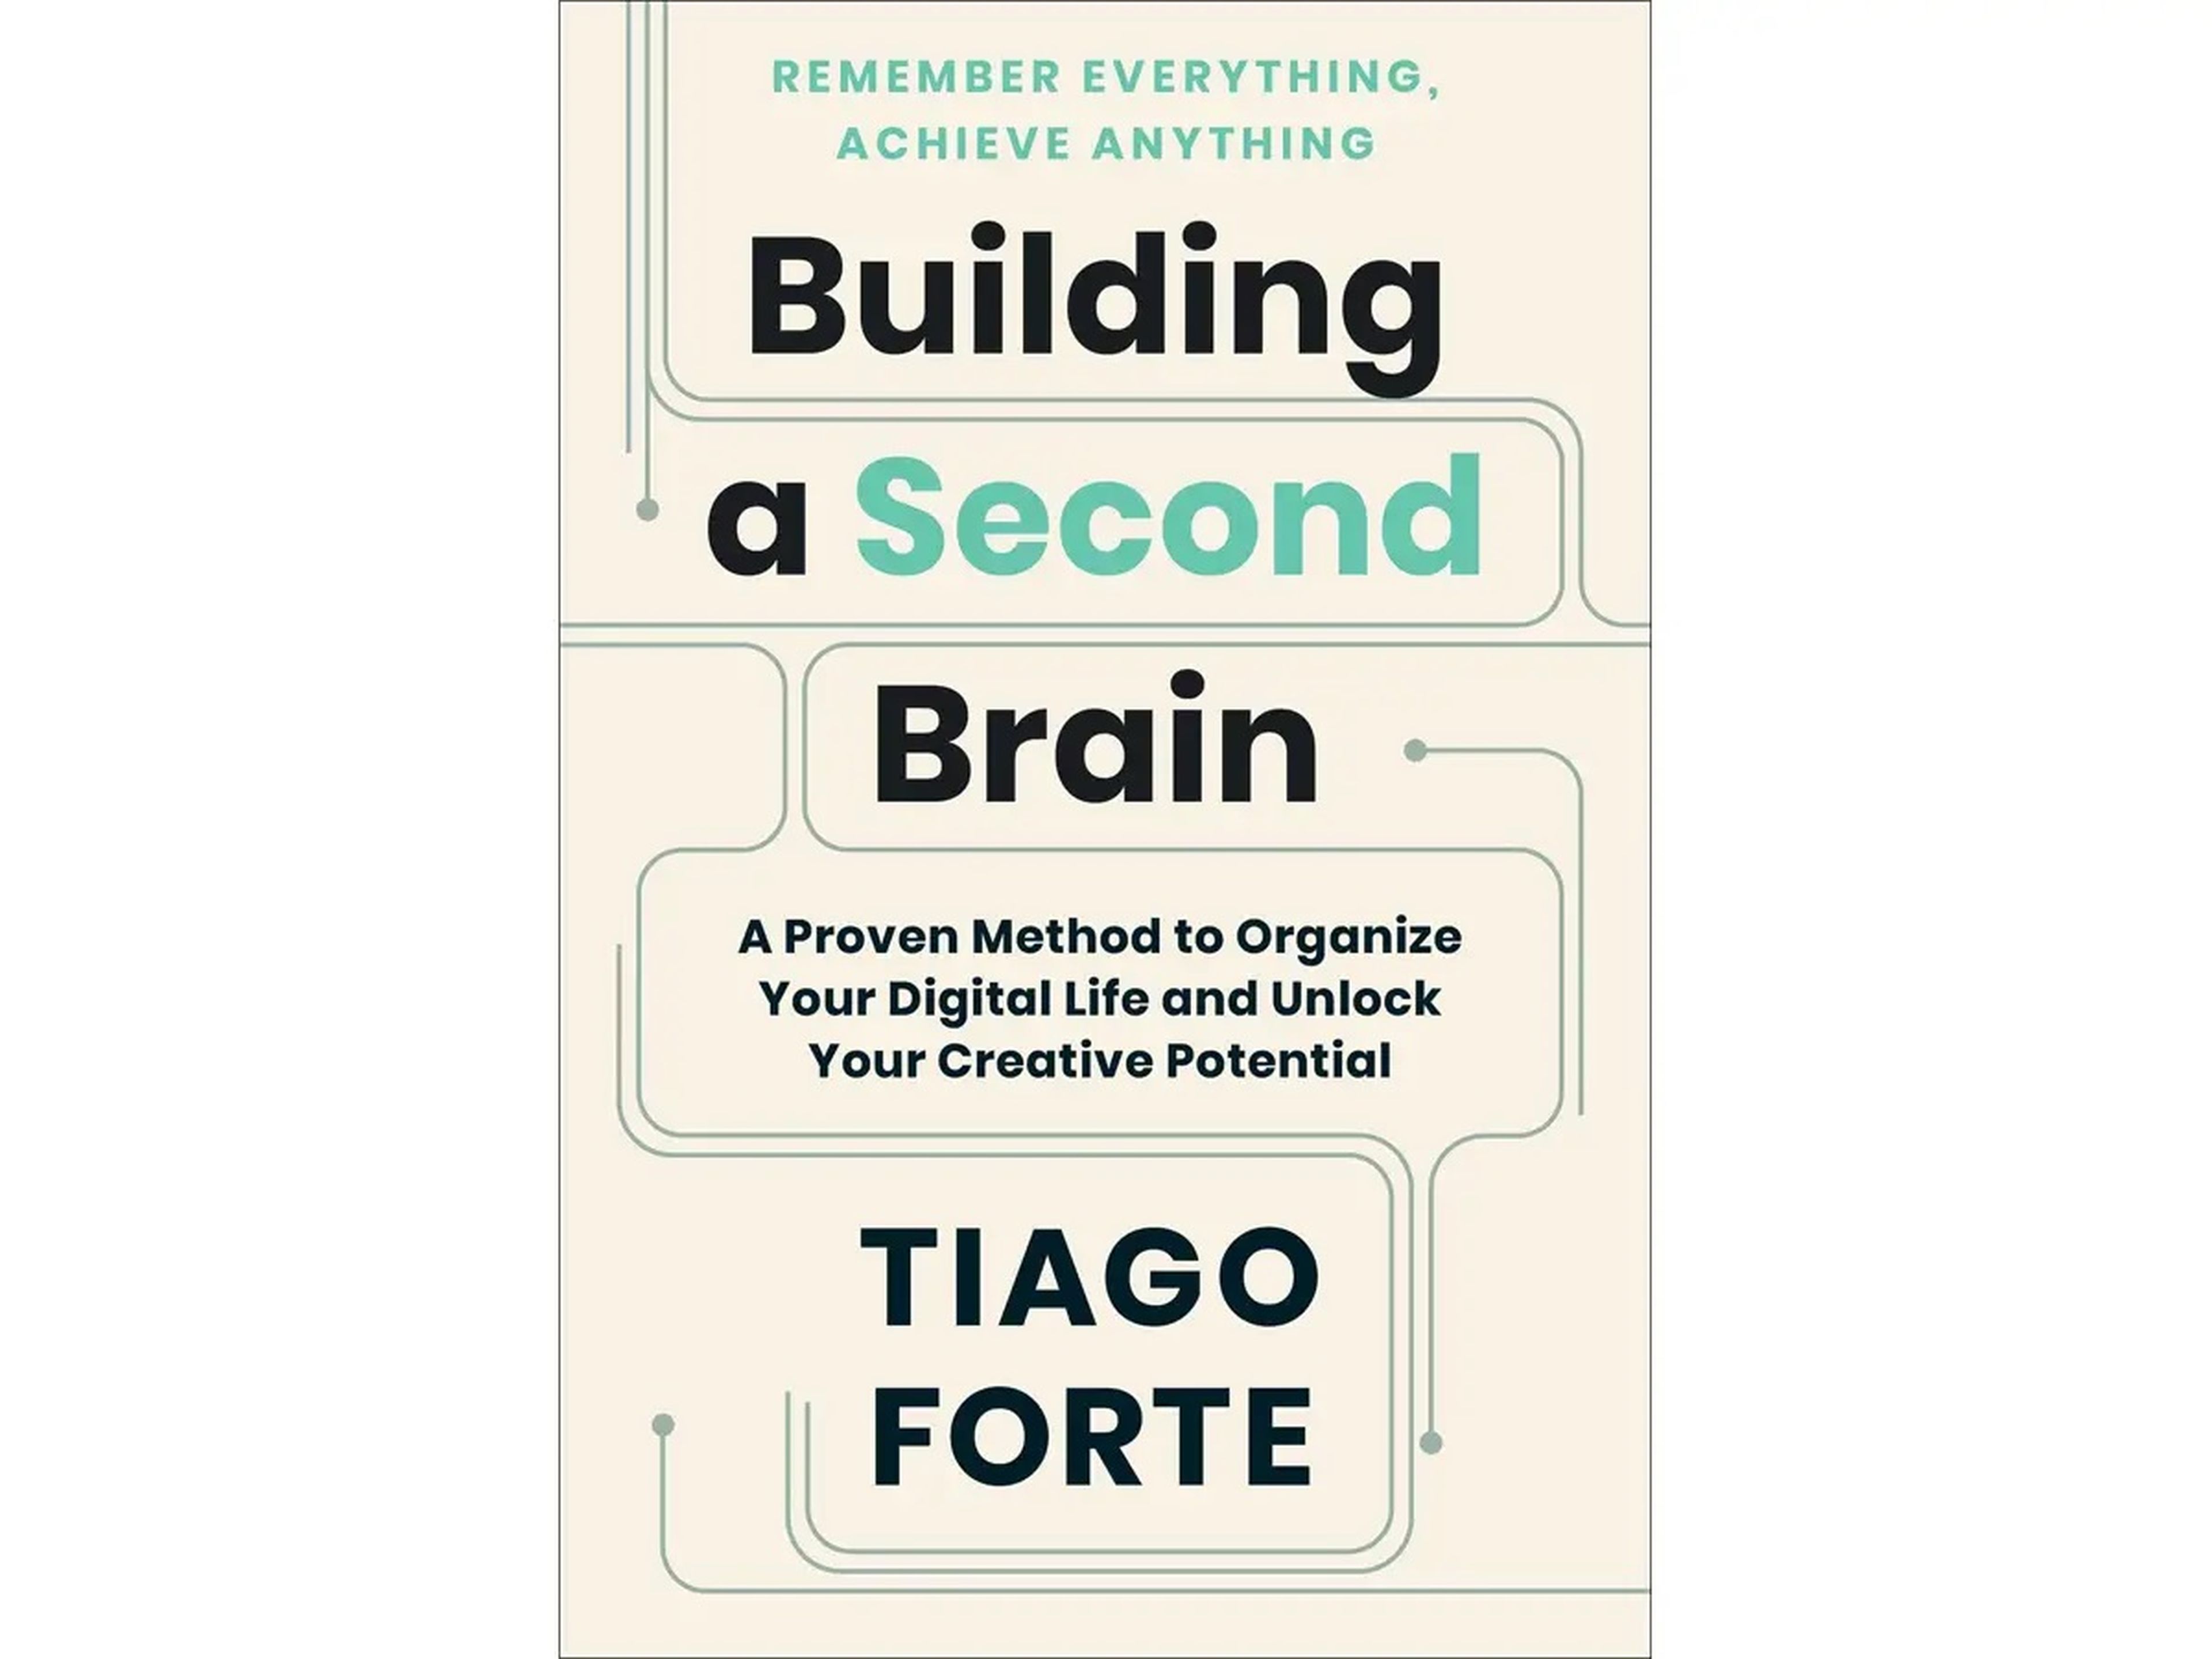 'Construir un segundo cerebro: Un método probado para organizar tu vida digital y liberar tu potencial creativo' de Tiago Forte.